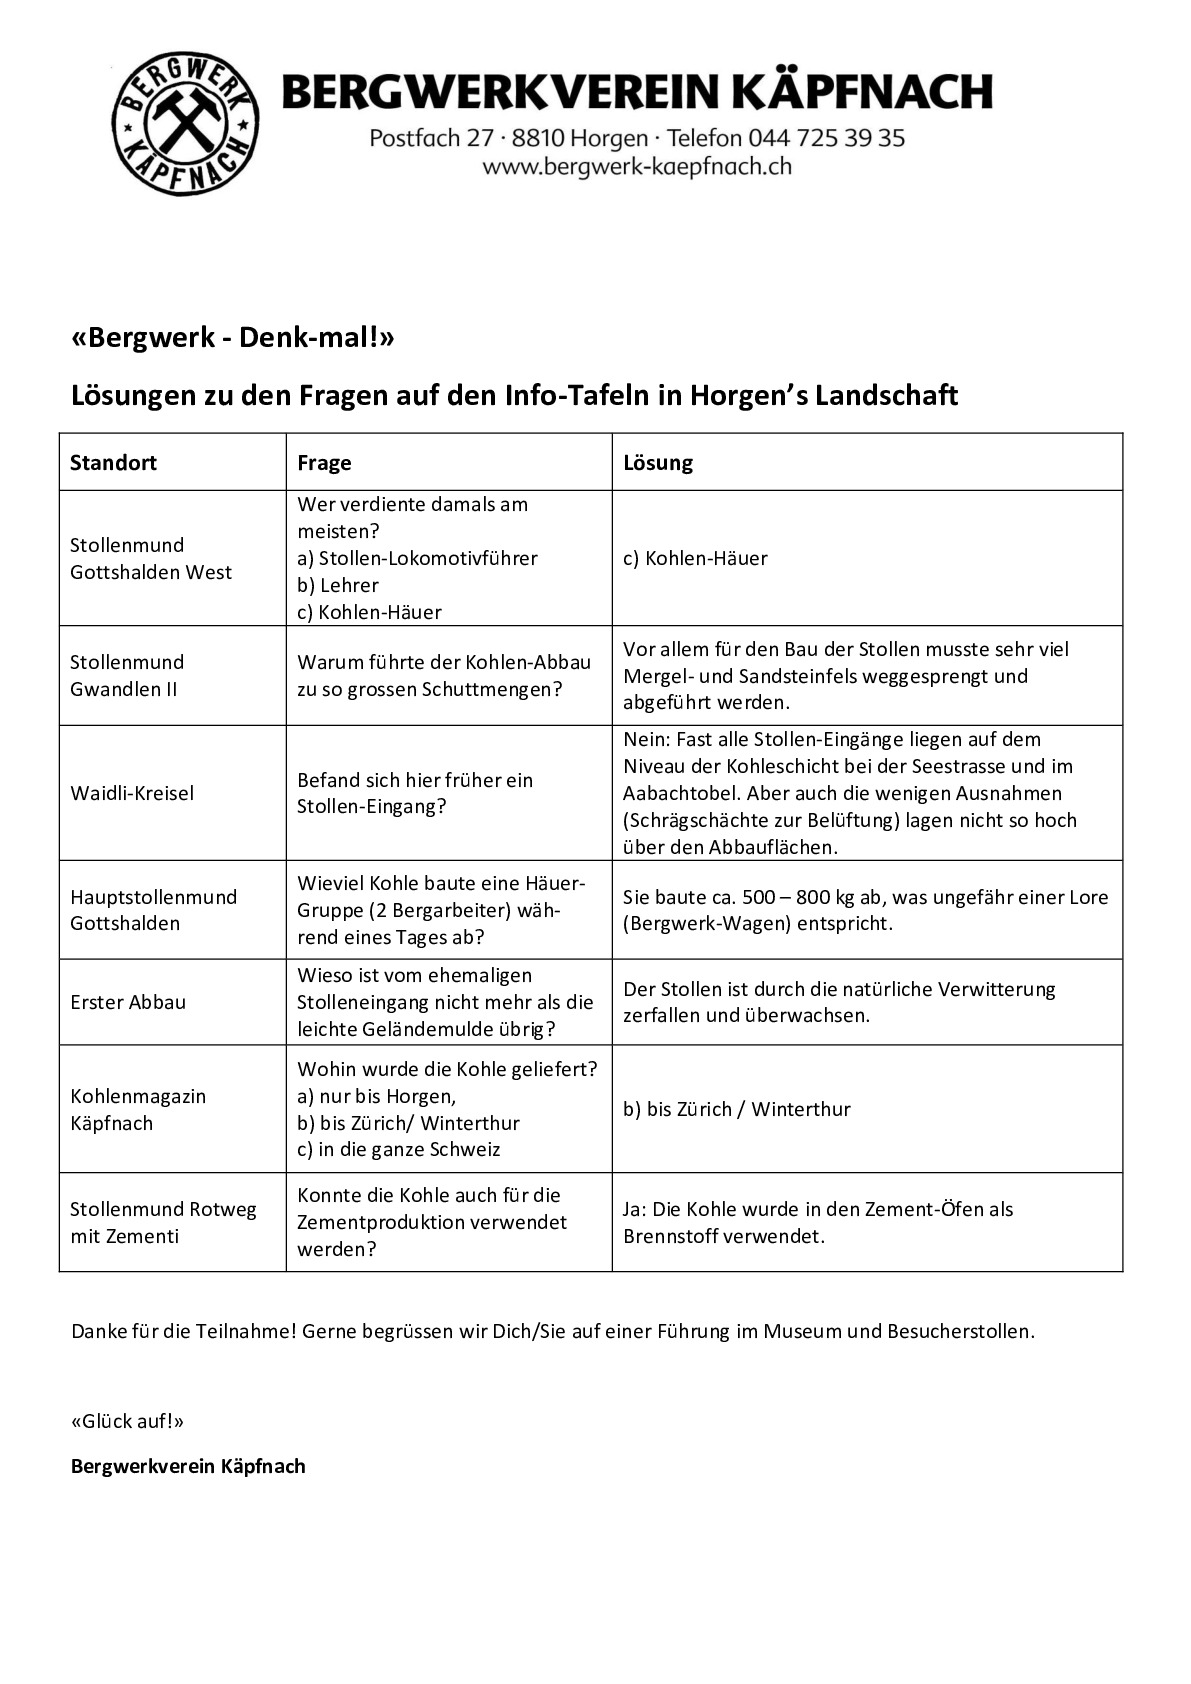 info-tafel_loesungen_0_0